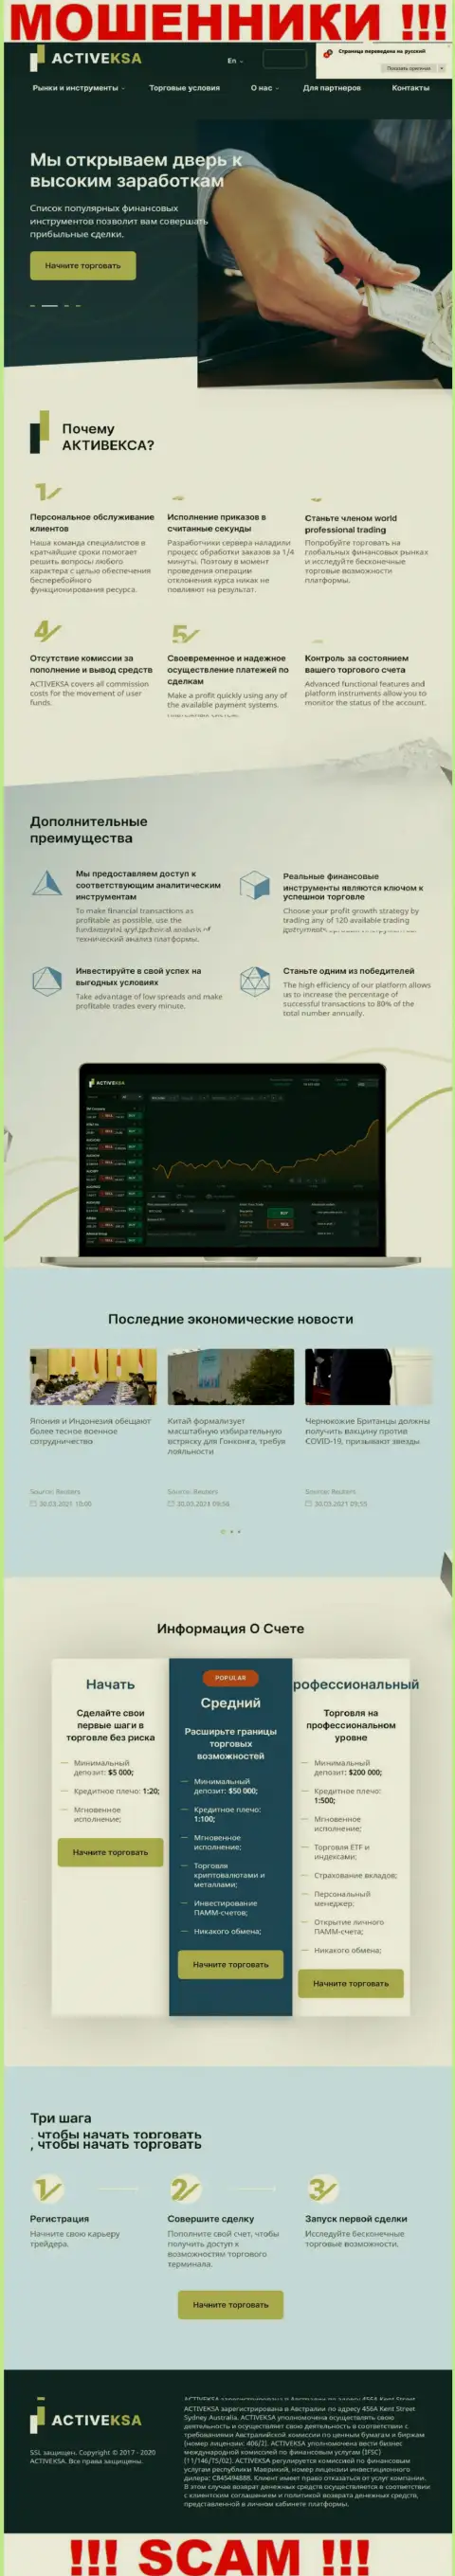 Активекса Ком - это официальный веб-сайт интернет-мошенников Activeksa